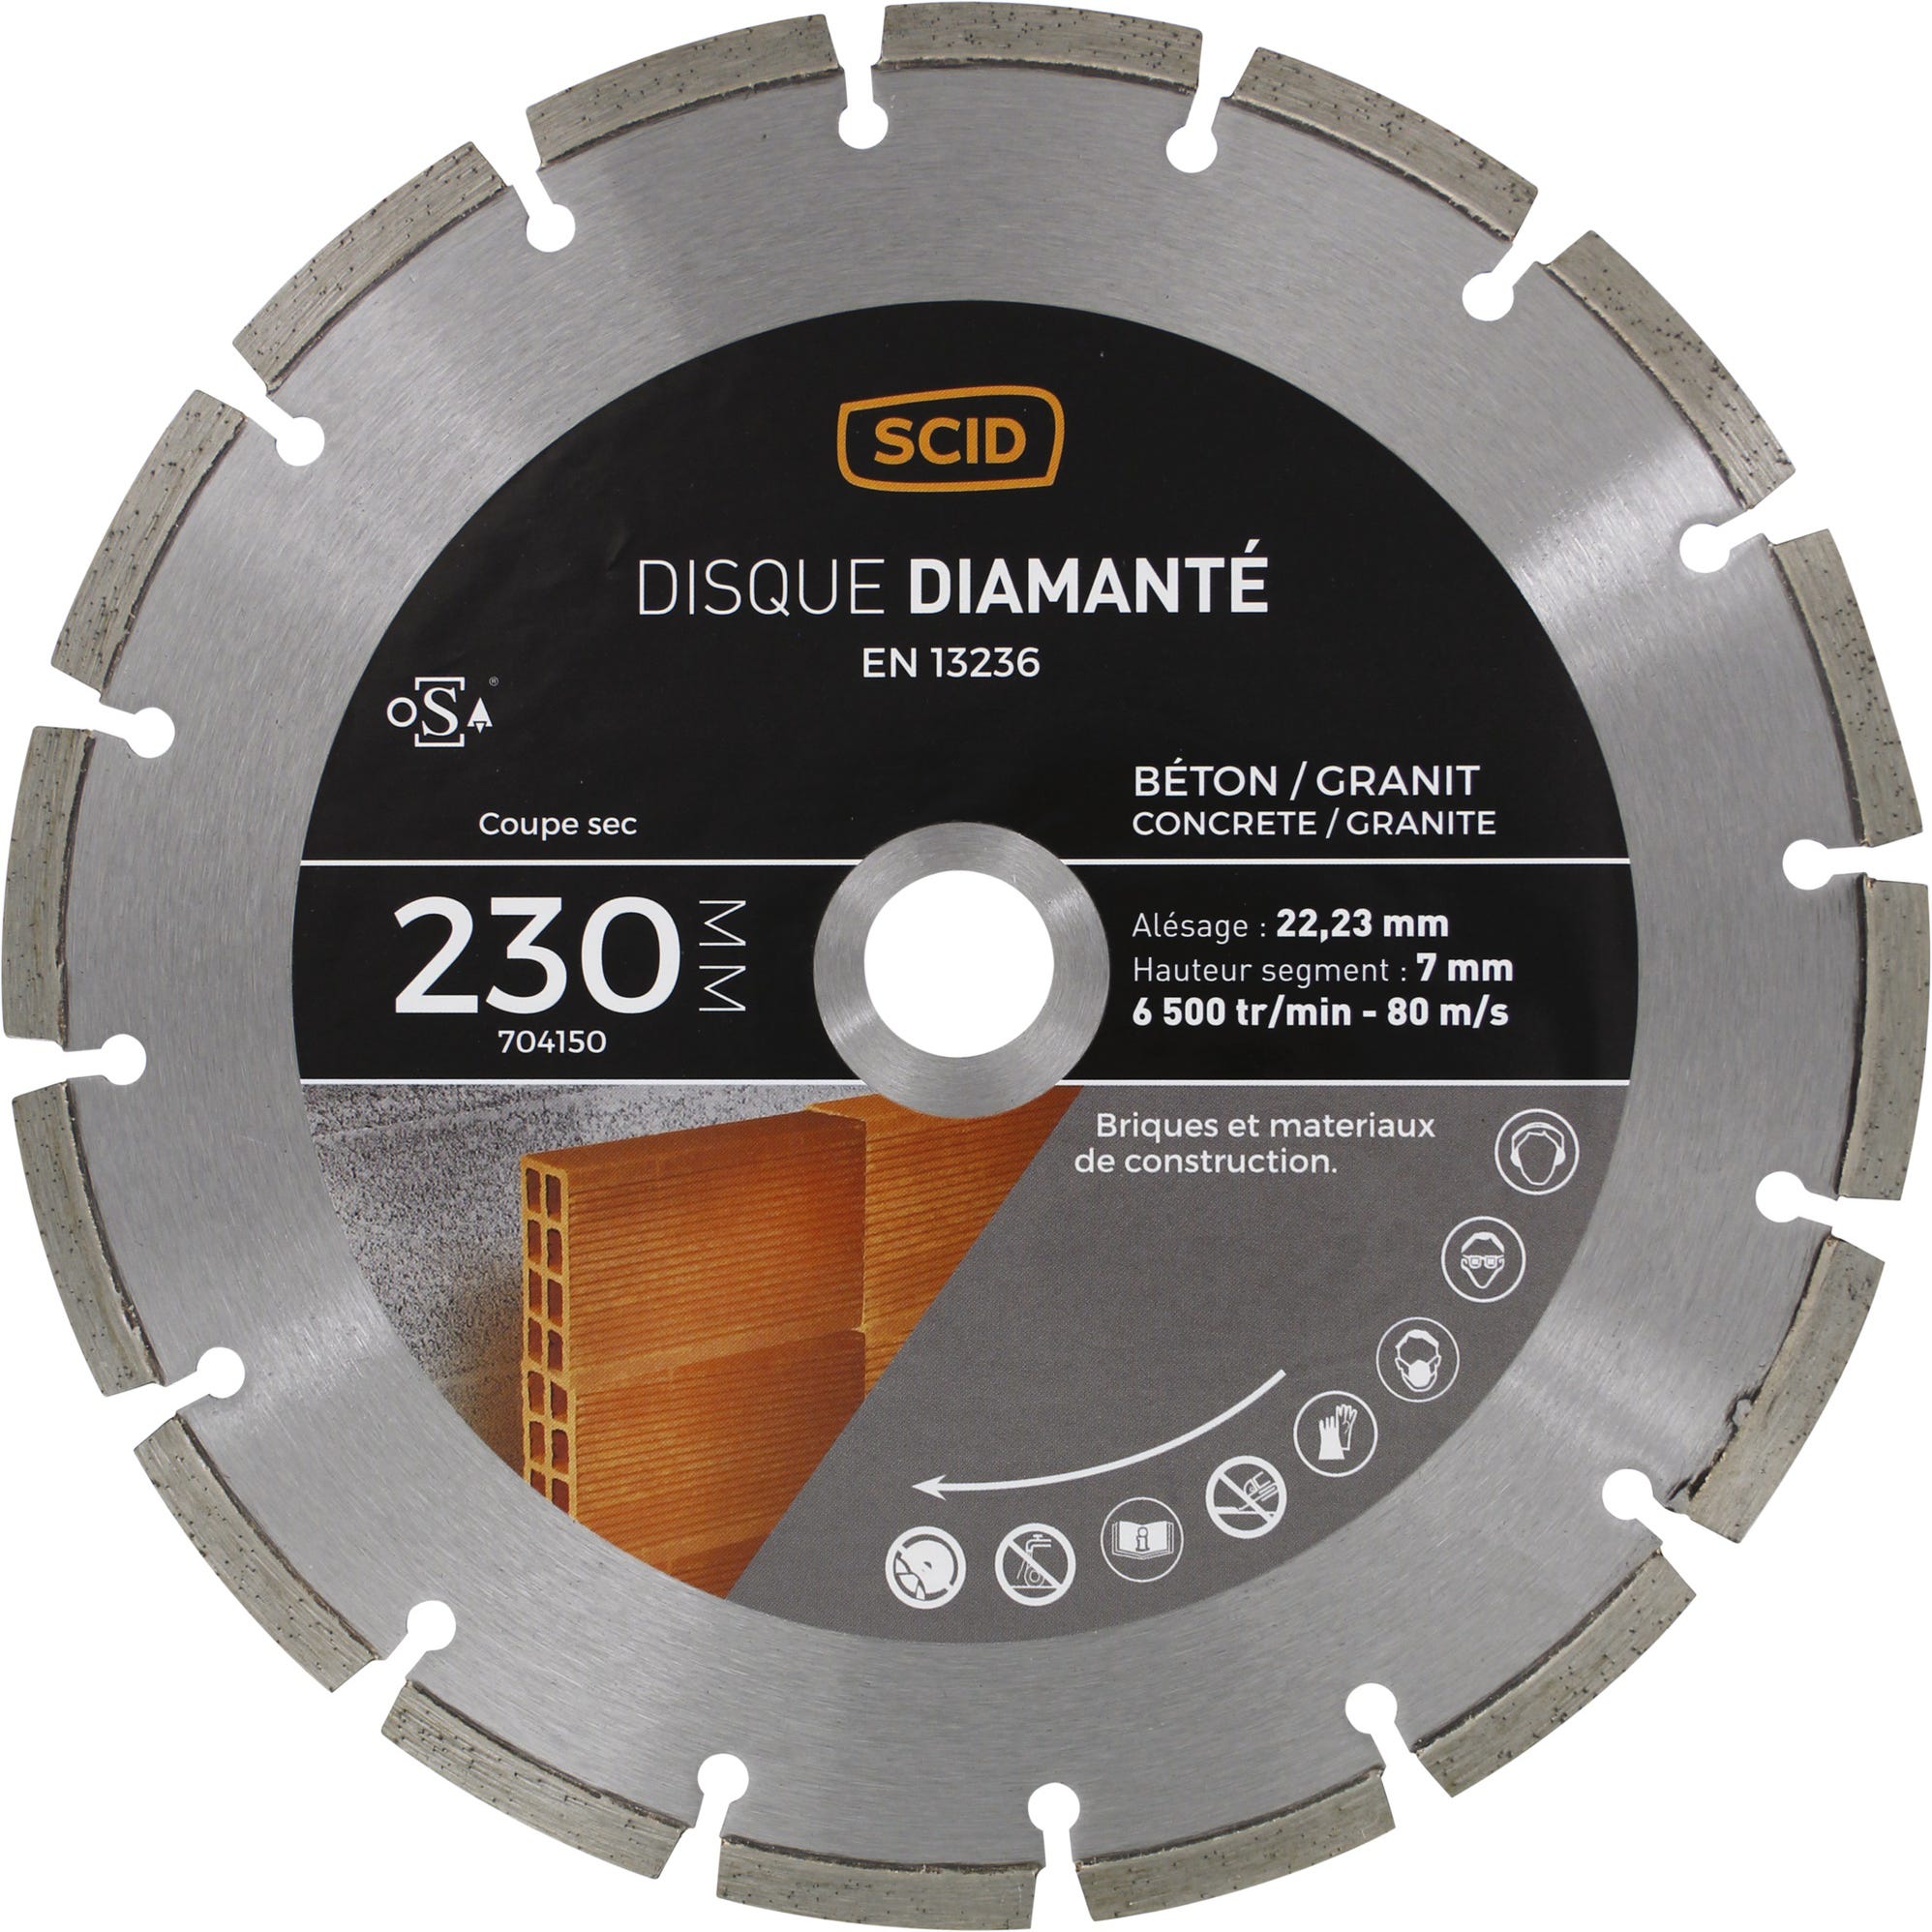 Disque diamanté béton granit SCID - Diamètre 230 mm